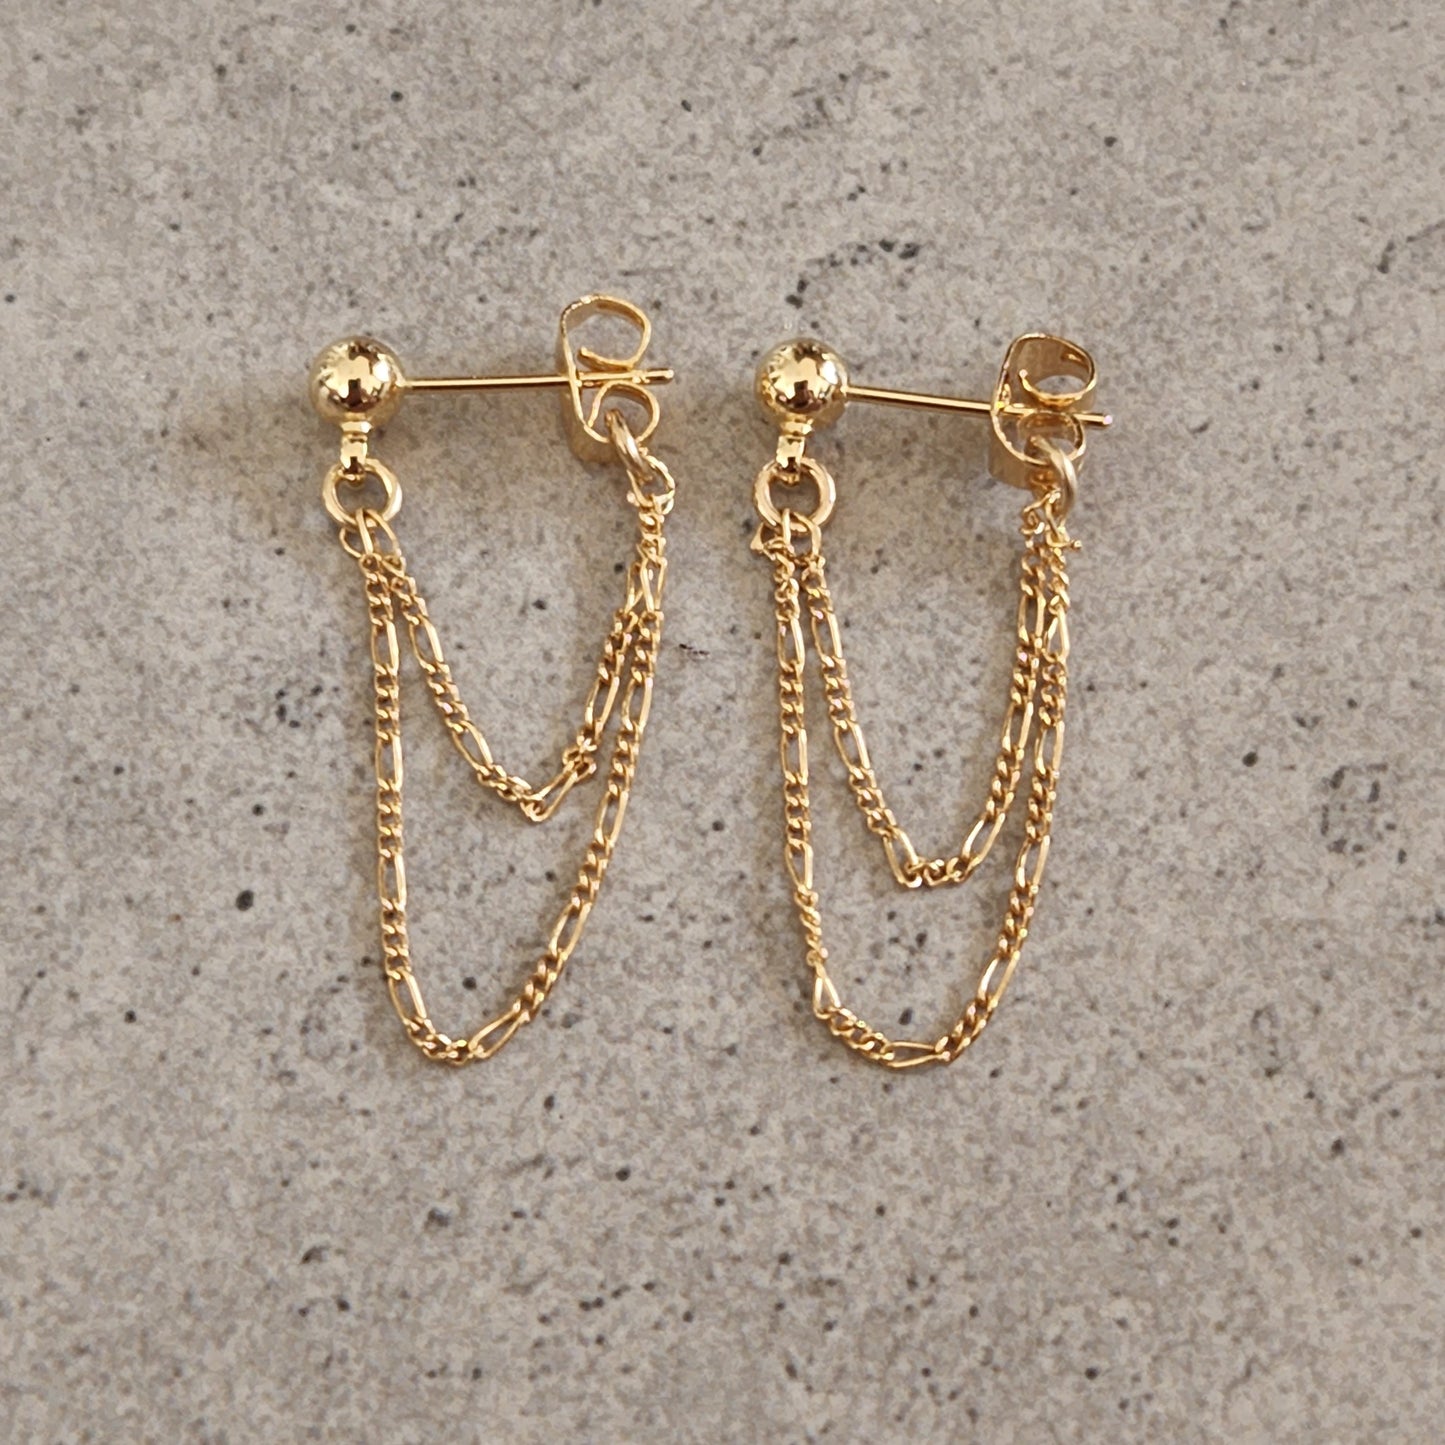 Minimalist Gold Chain Earrings